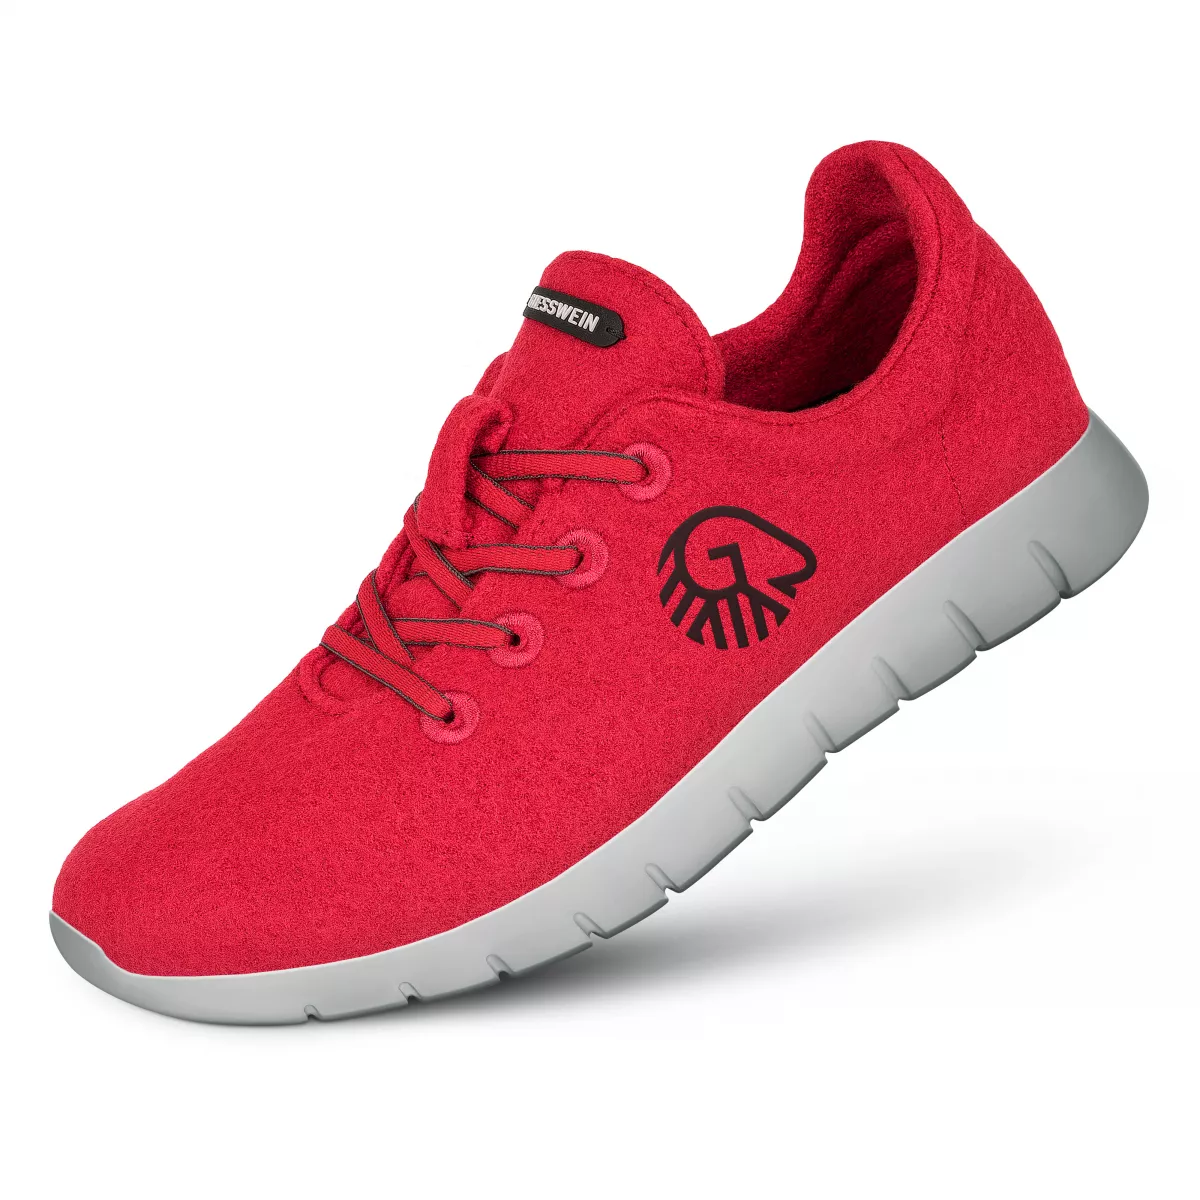 Pantofi barbati Merino Runners rosu 42